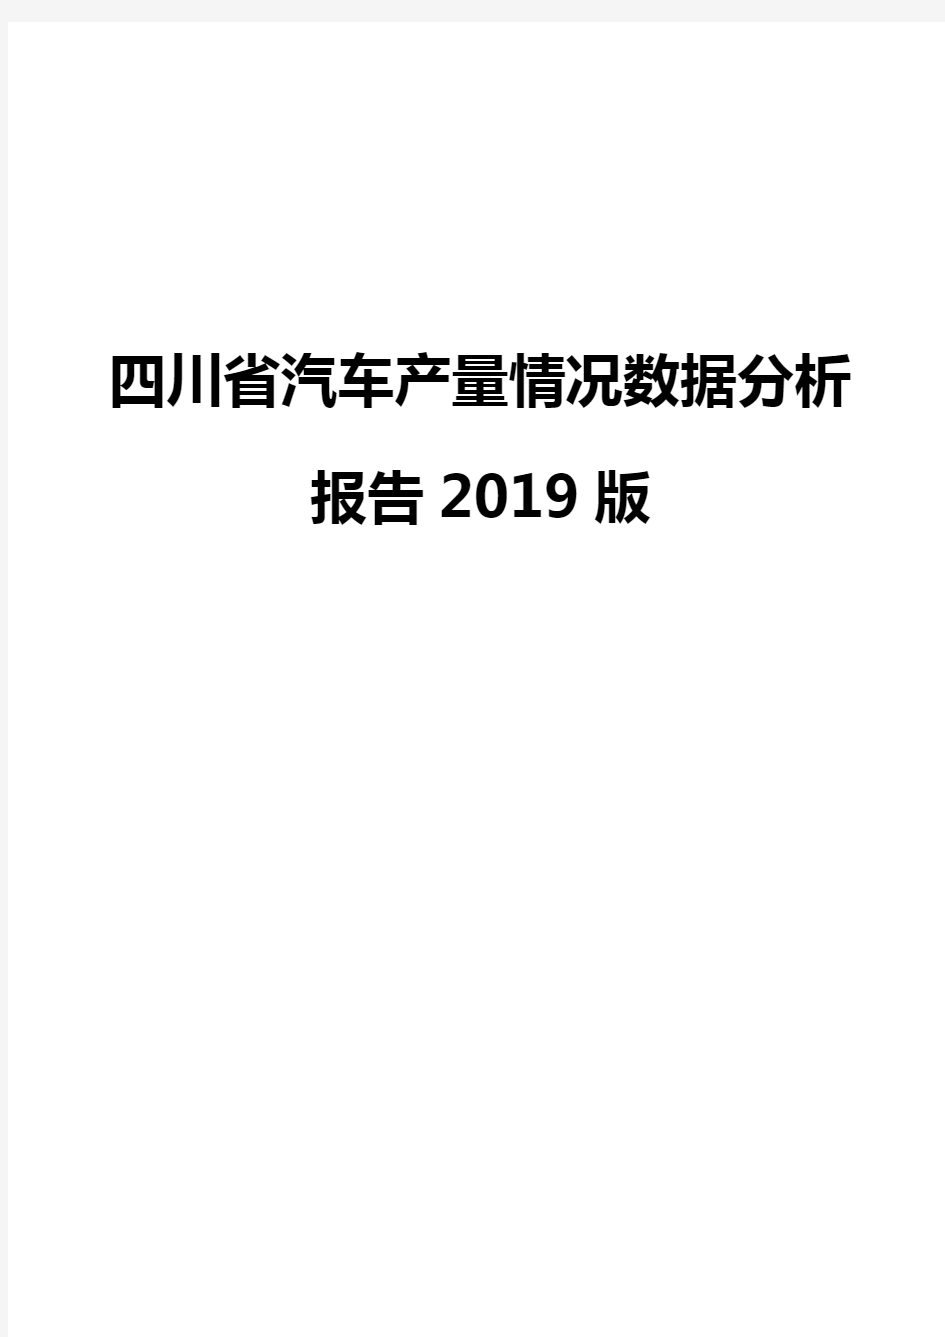 四川省汽车产量情况数据分析报告2019版